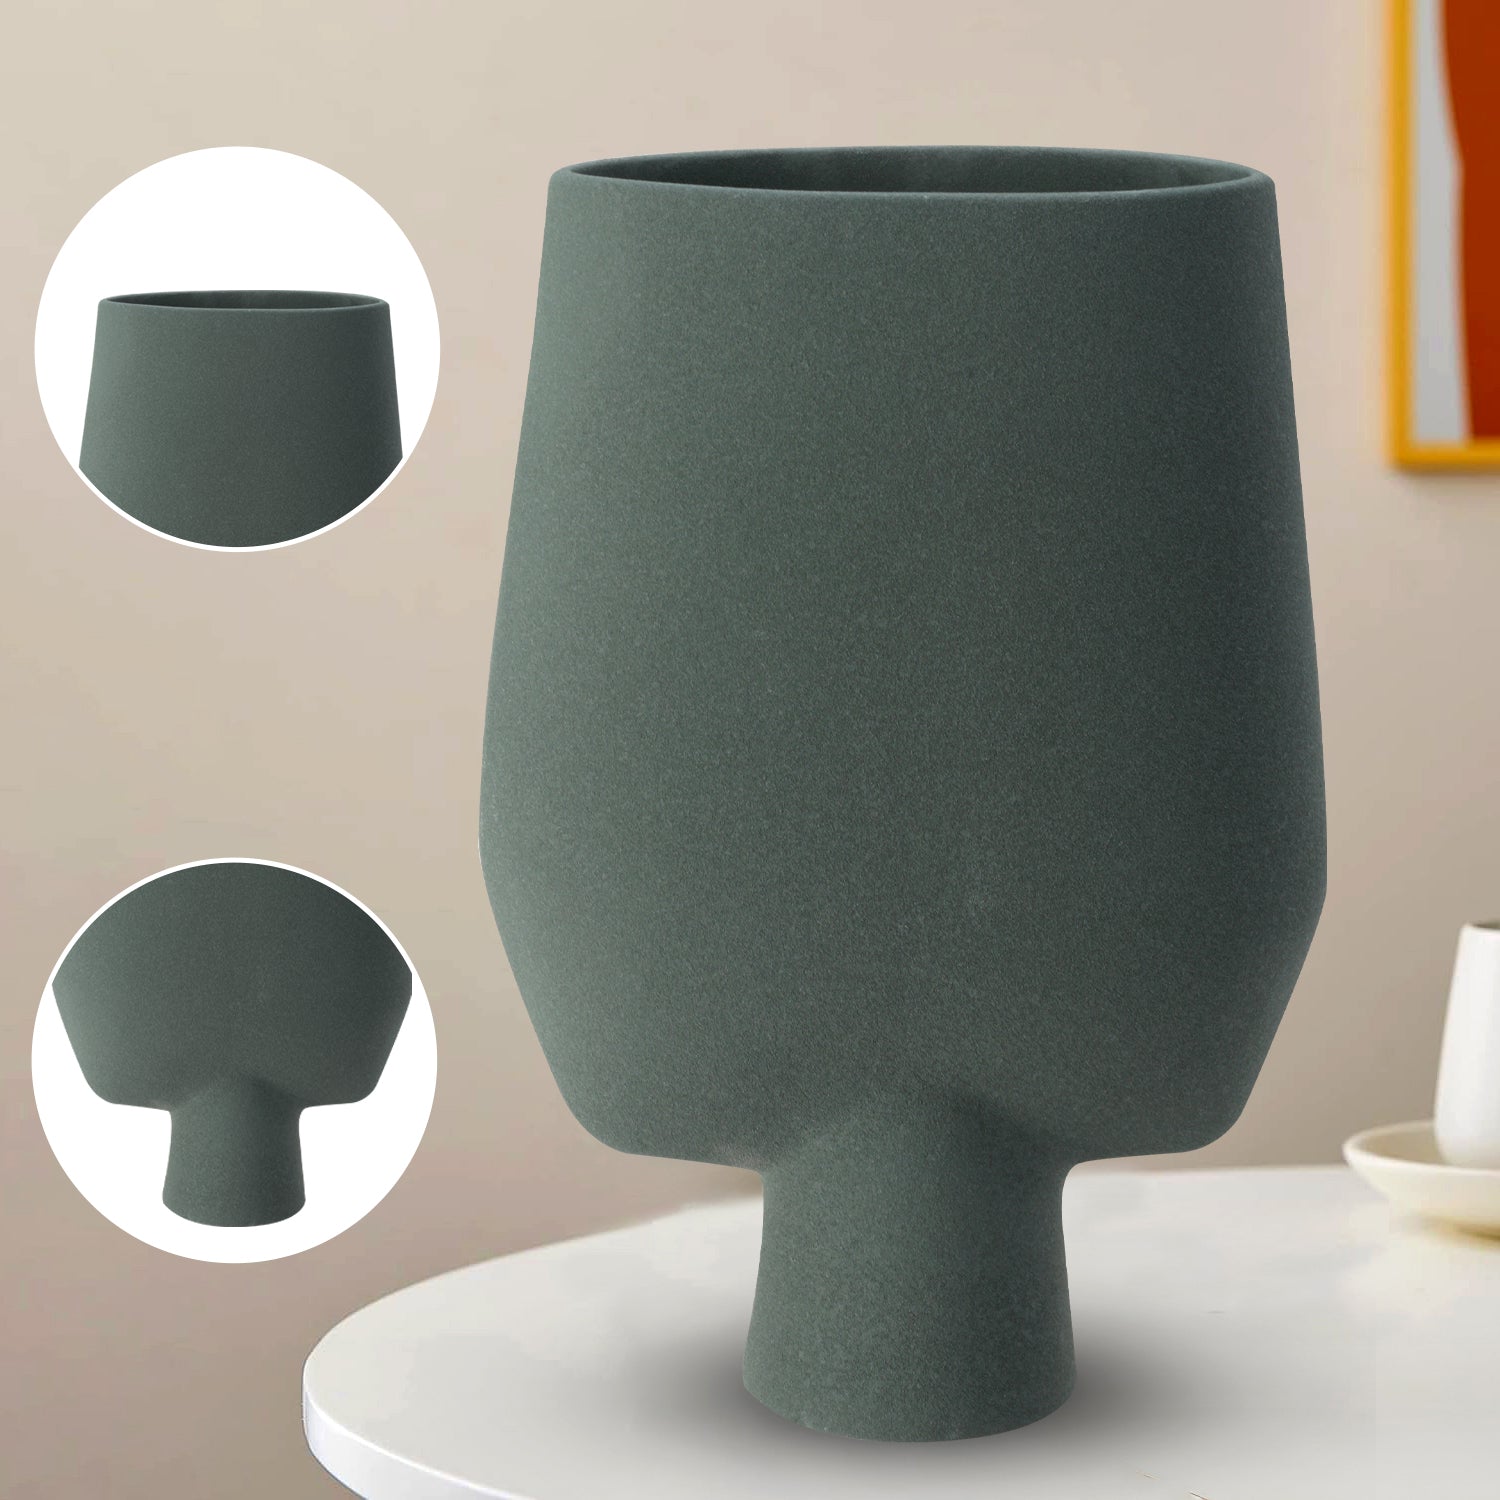 Decorative Flower Vase for Living Room - Bottle Green